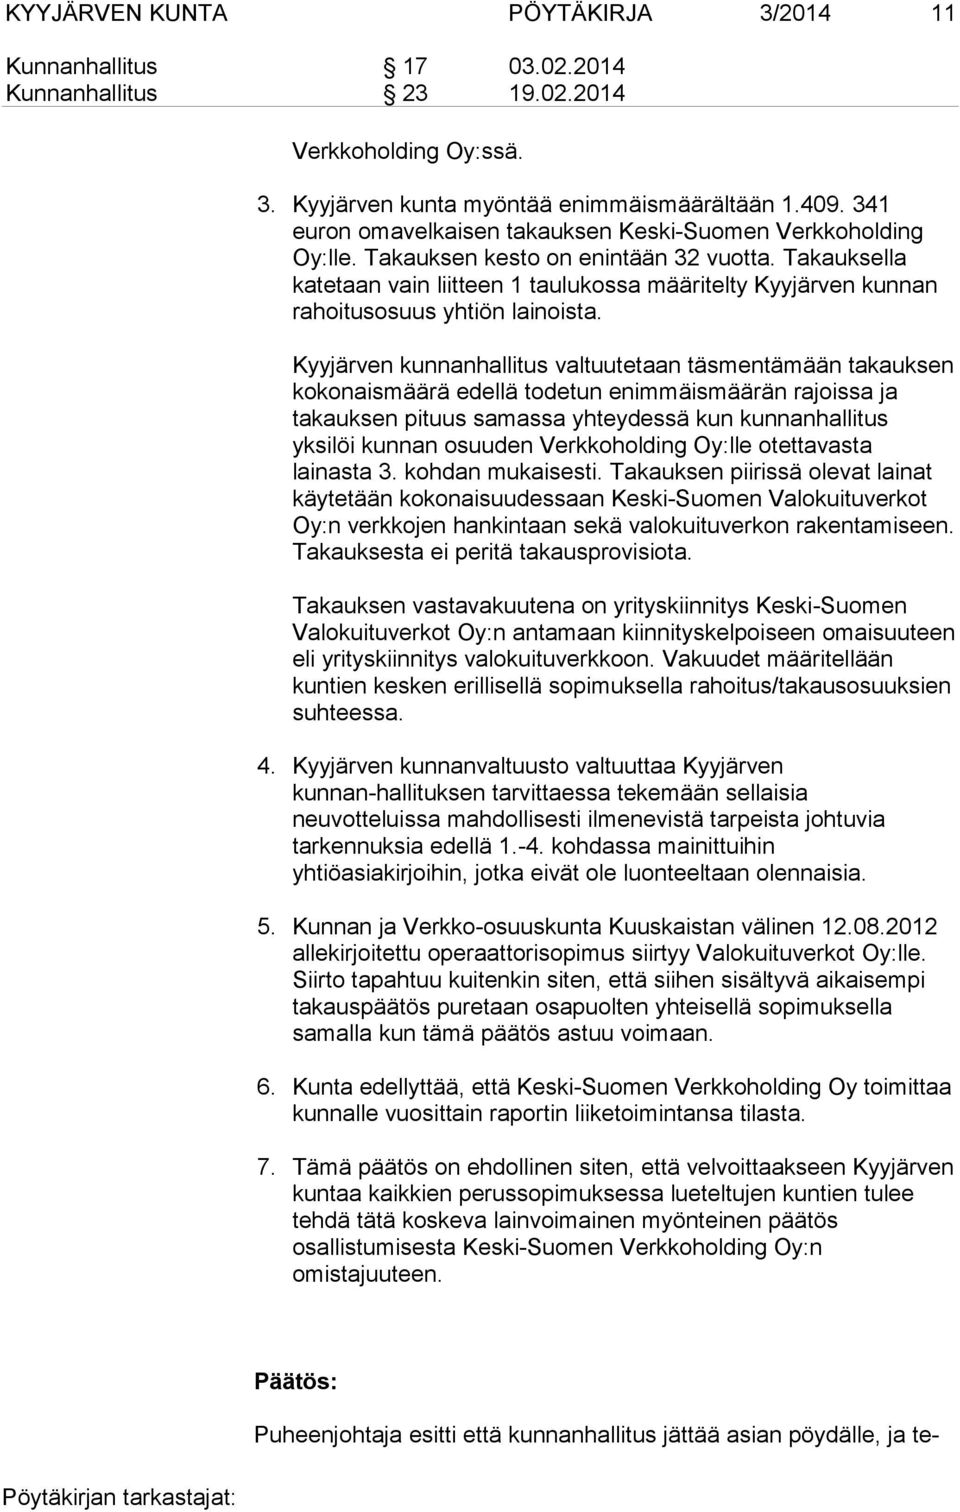 Takauksella katetaan vain liitteen 1 taulukossa määritelty Kyyjärven kunnan rahoitusosuus yhtiön lainoista.